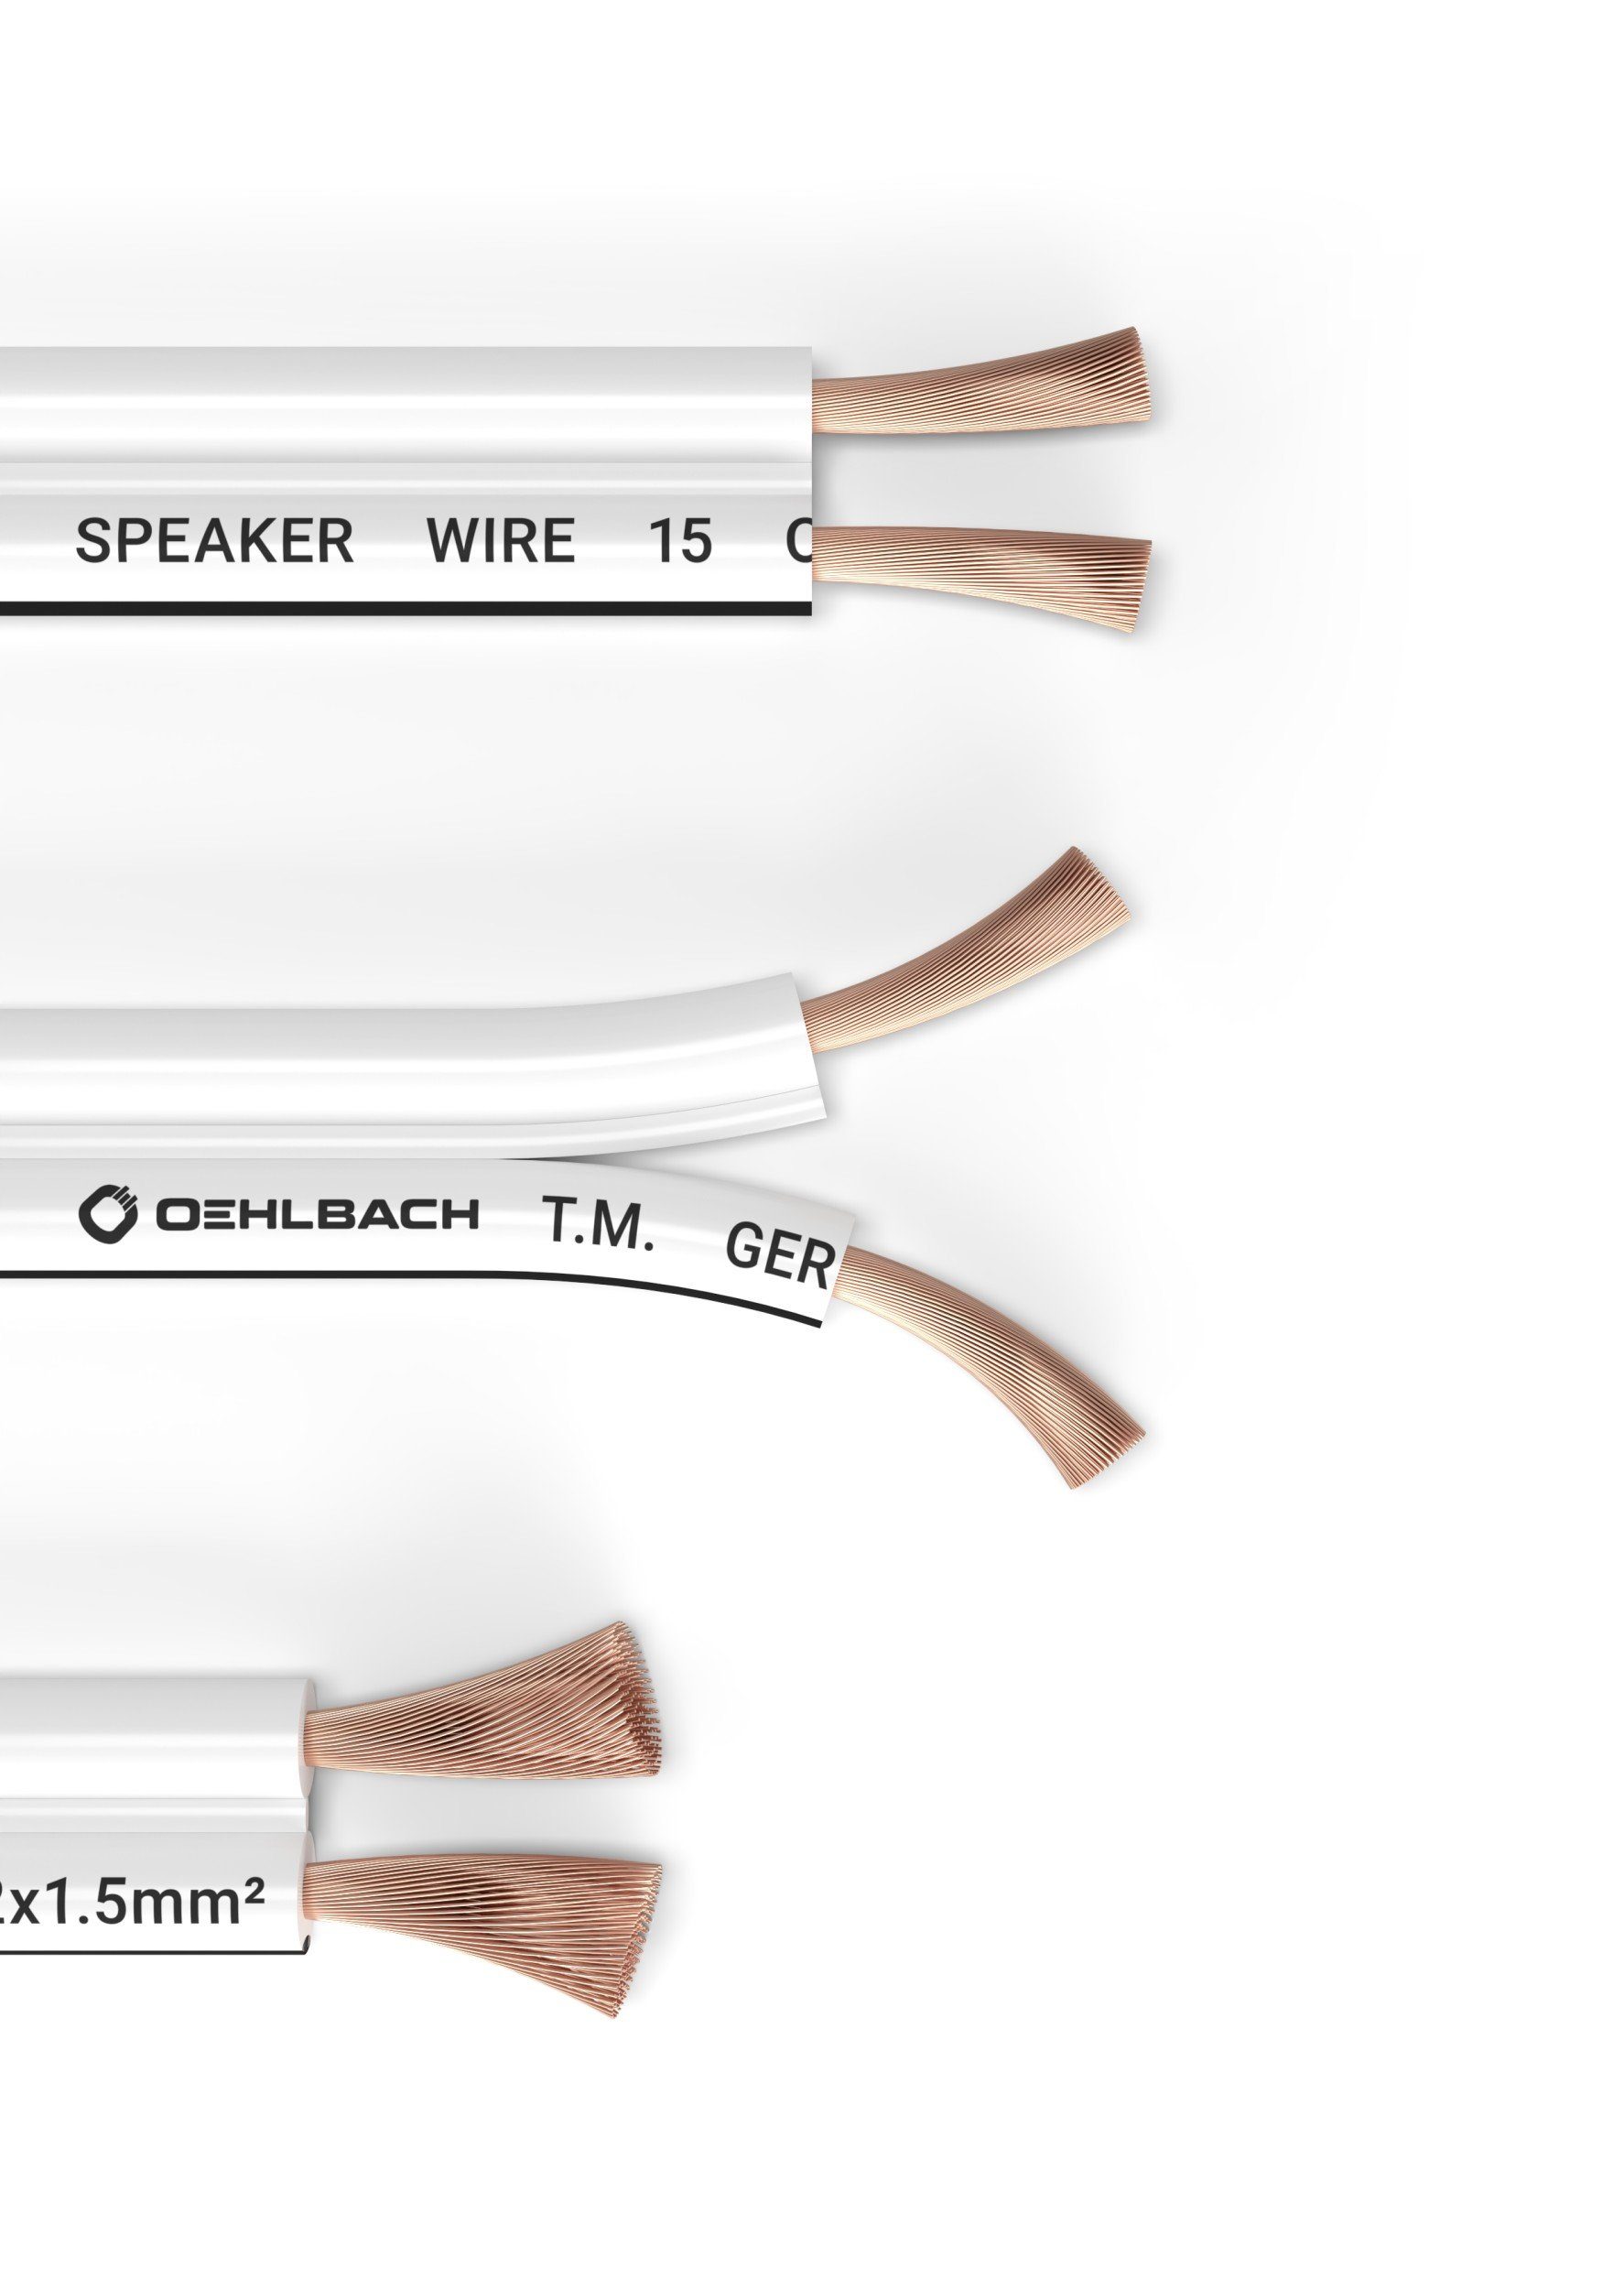 Weiß 30 Meter Oehlbach Speaker Wire SP-40 sauerstofffreies Kupfer Stereo HI-FI Lautsprecherkabel 2x4,0 mm² Boxenkabel mit OFC Mini Spule Lautsprecher Kabel 